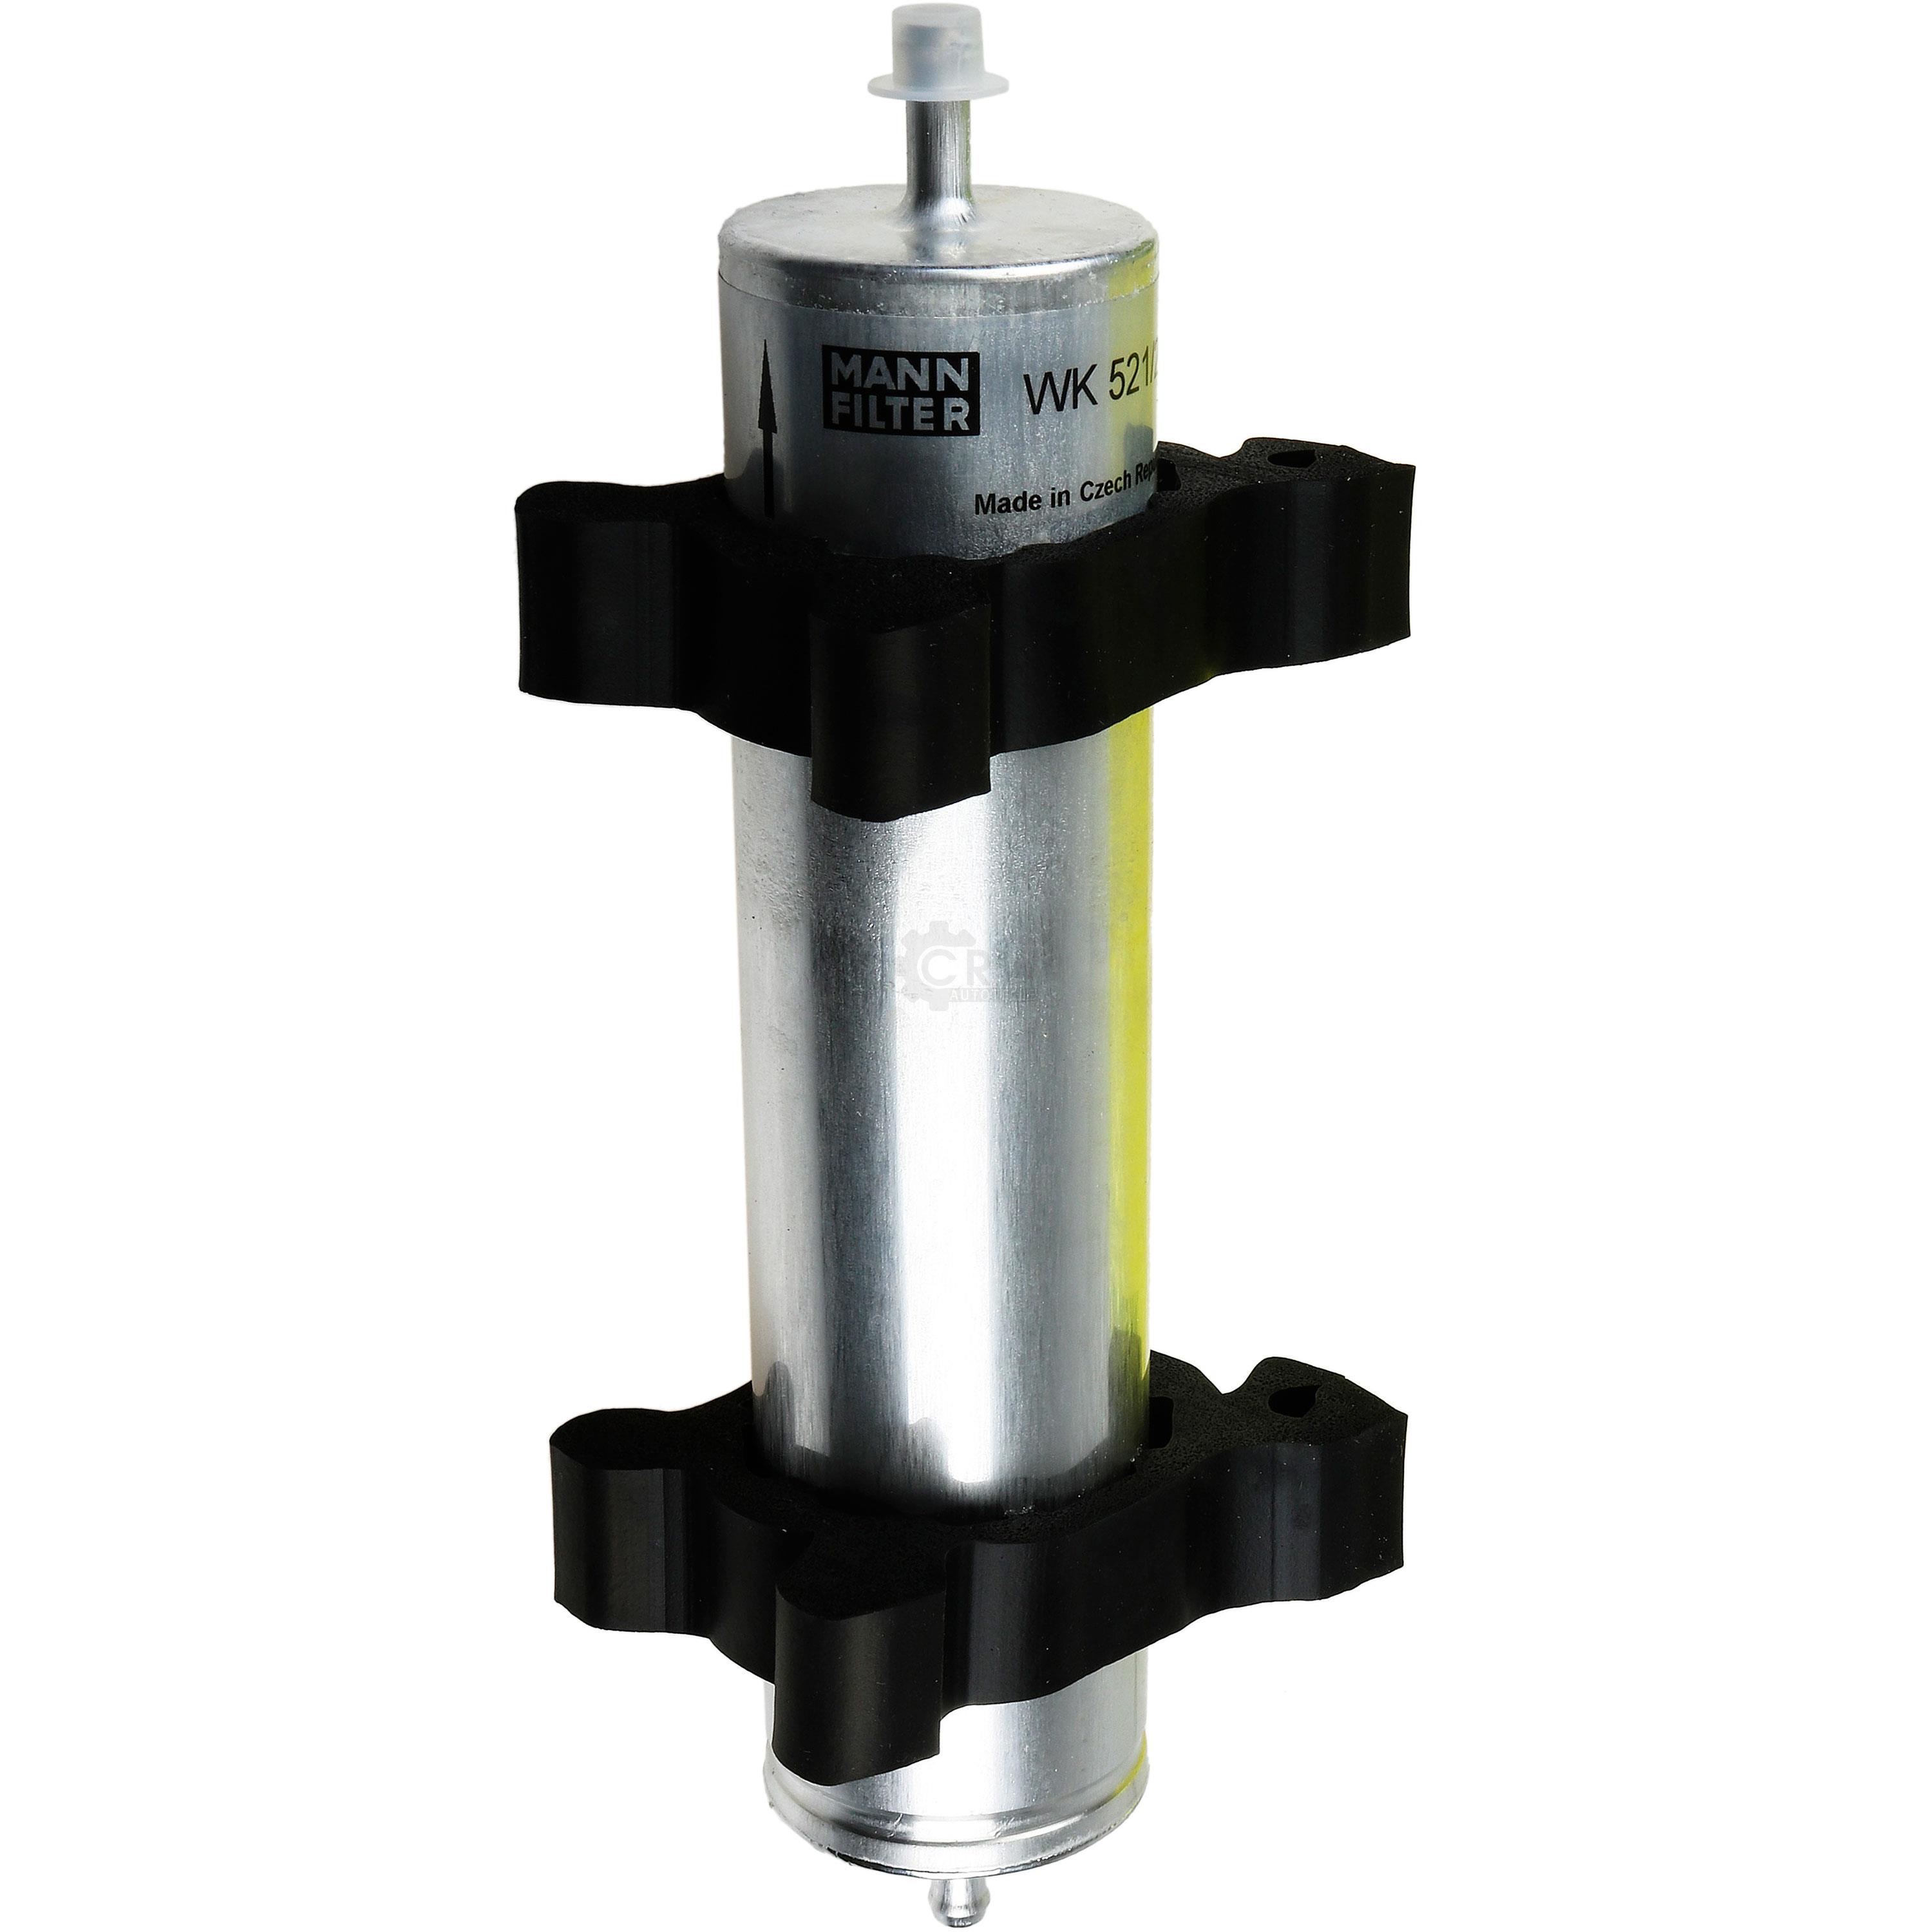 MANN-FILTER Kraftstofffilter WK 521/2 Fuel Filter